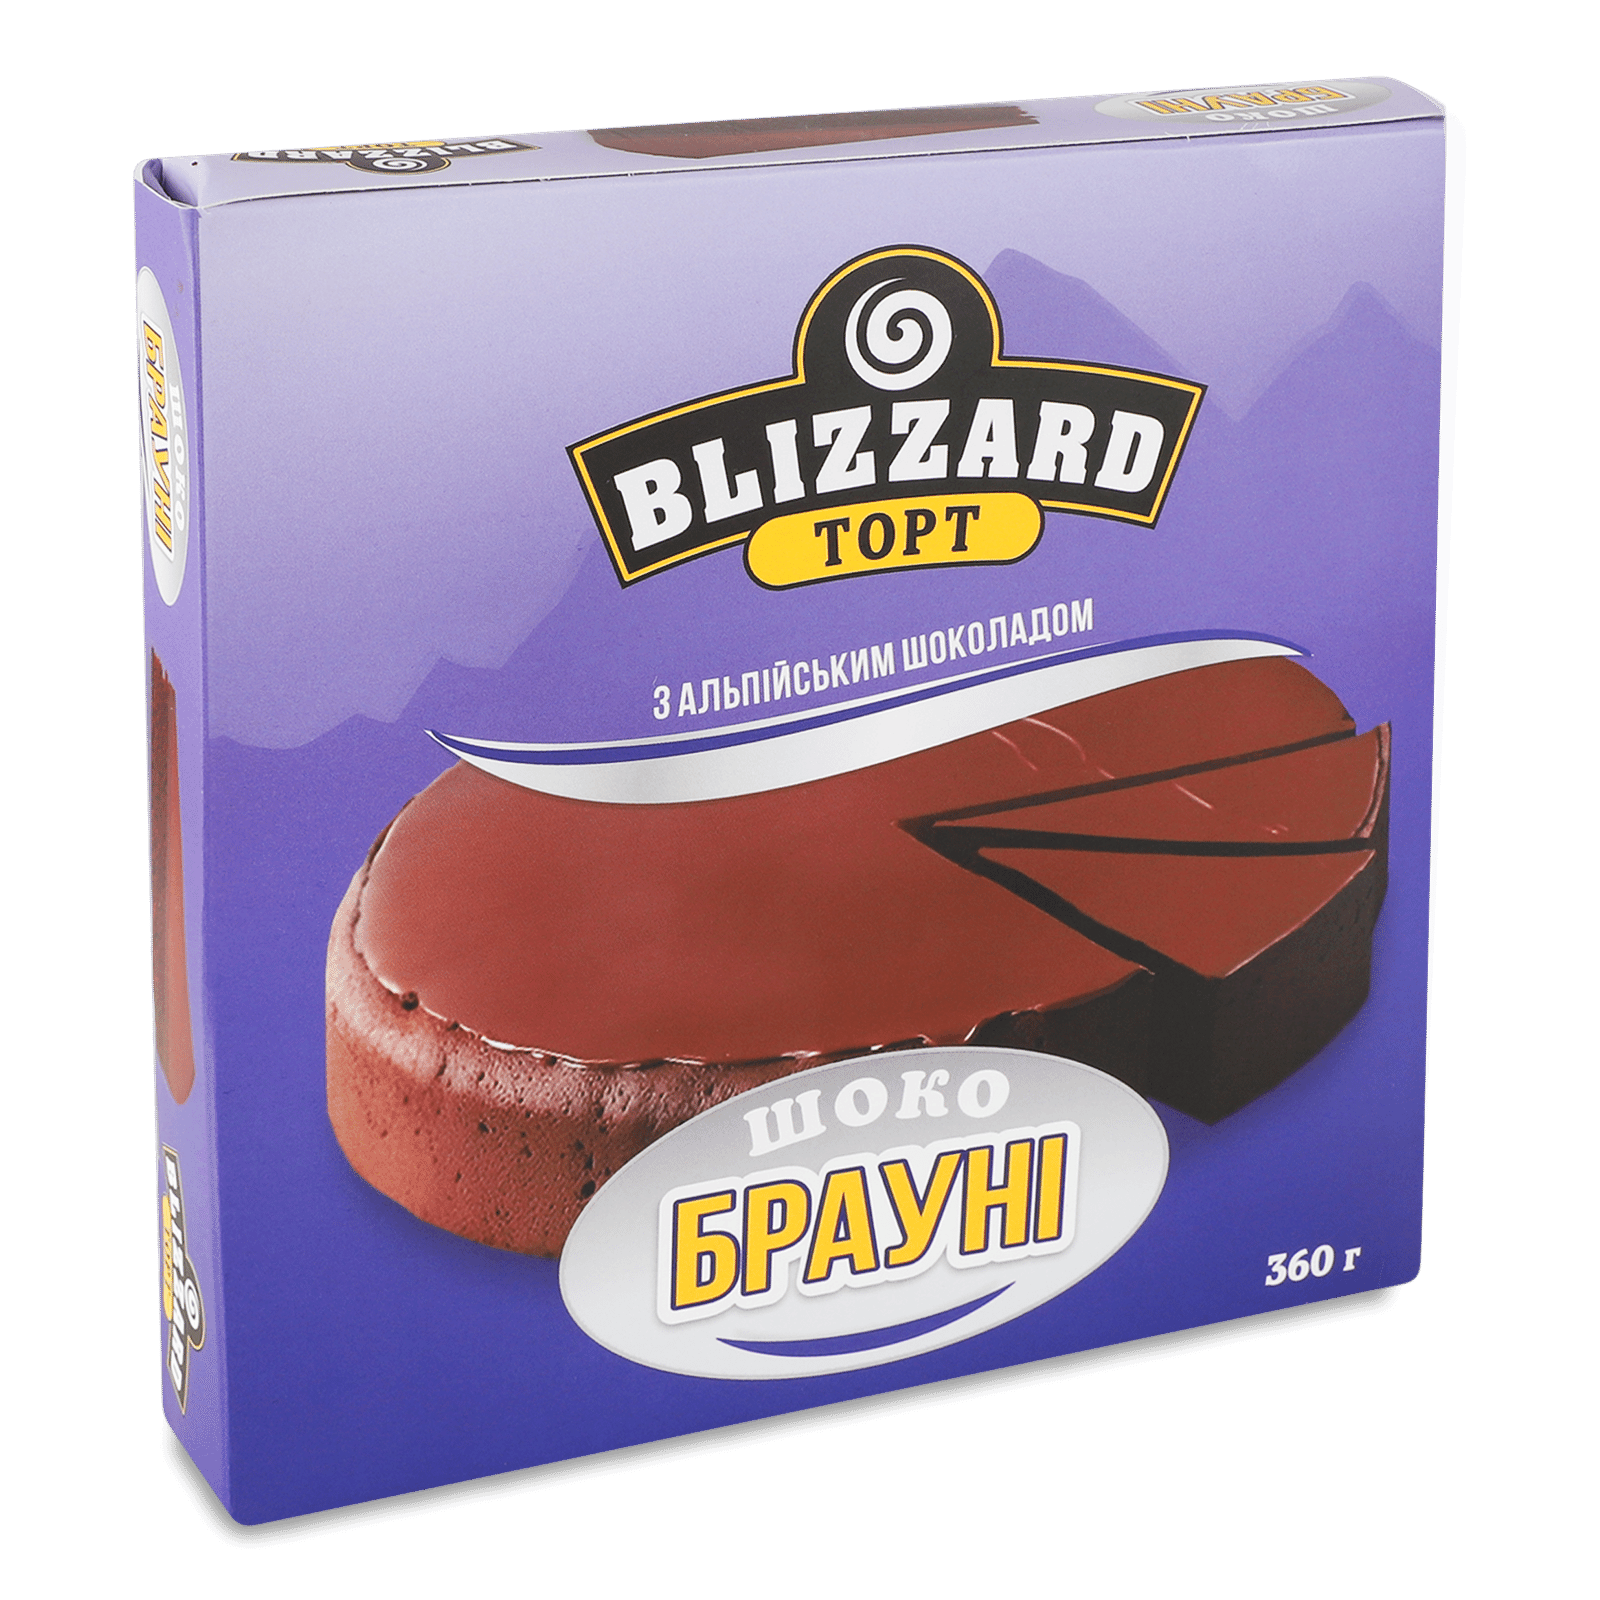 Торт Blizzard Шокобрауні з альпійським шоколадом, заморожений - 1